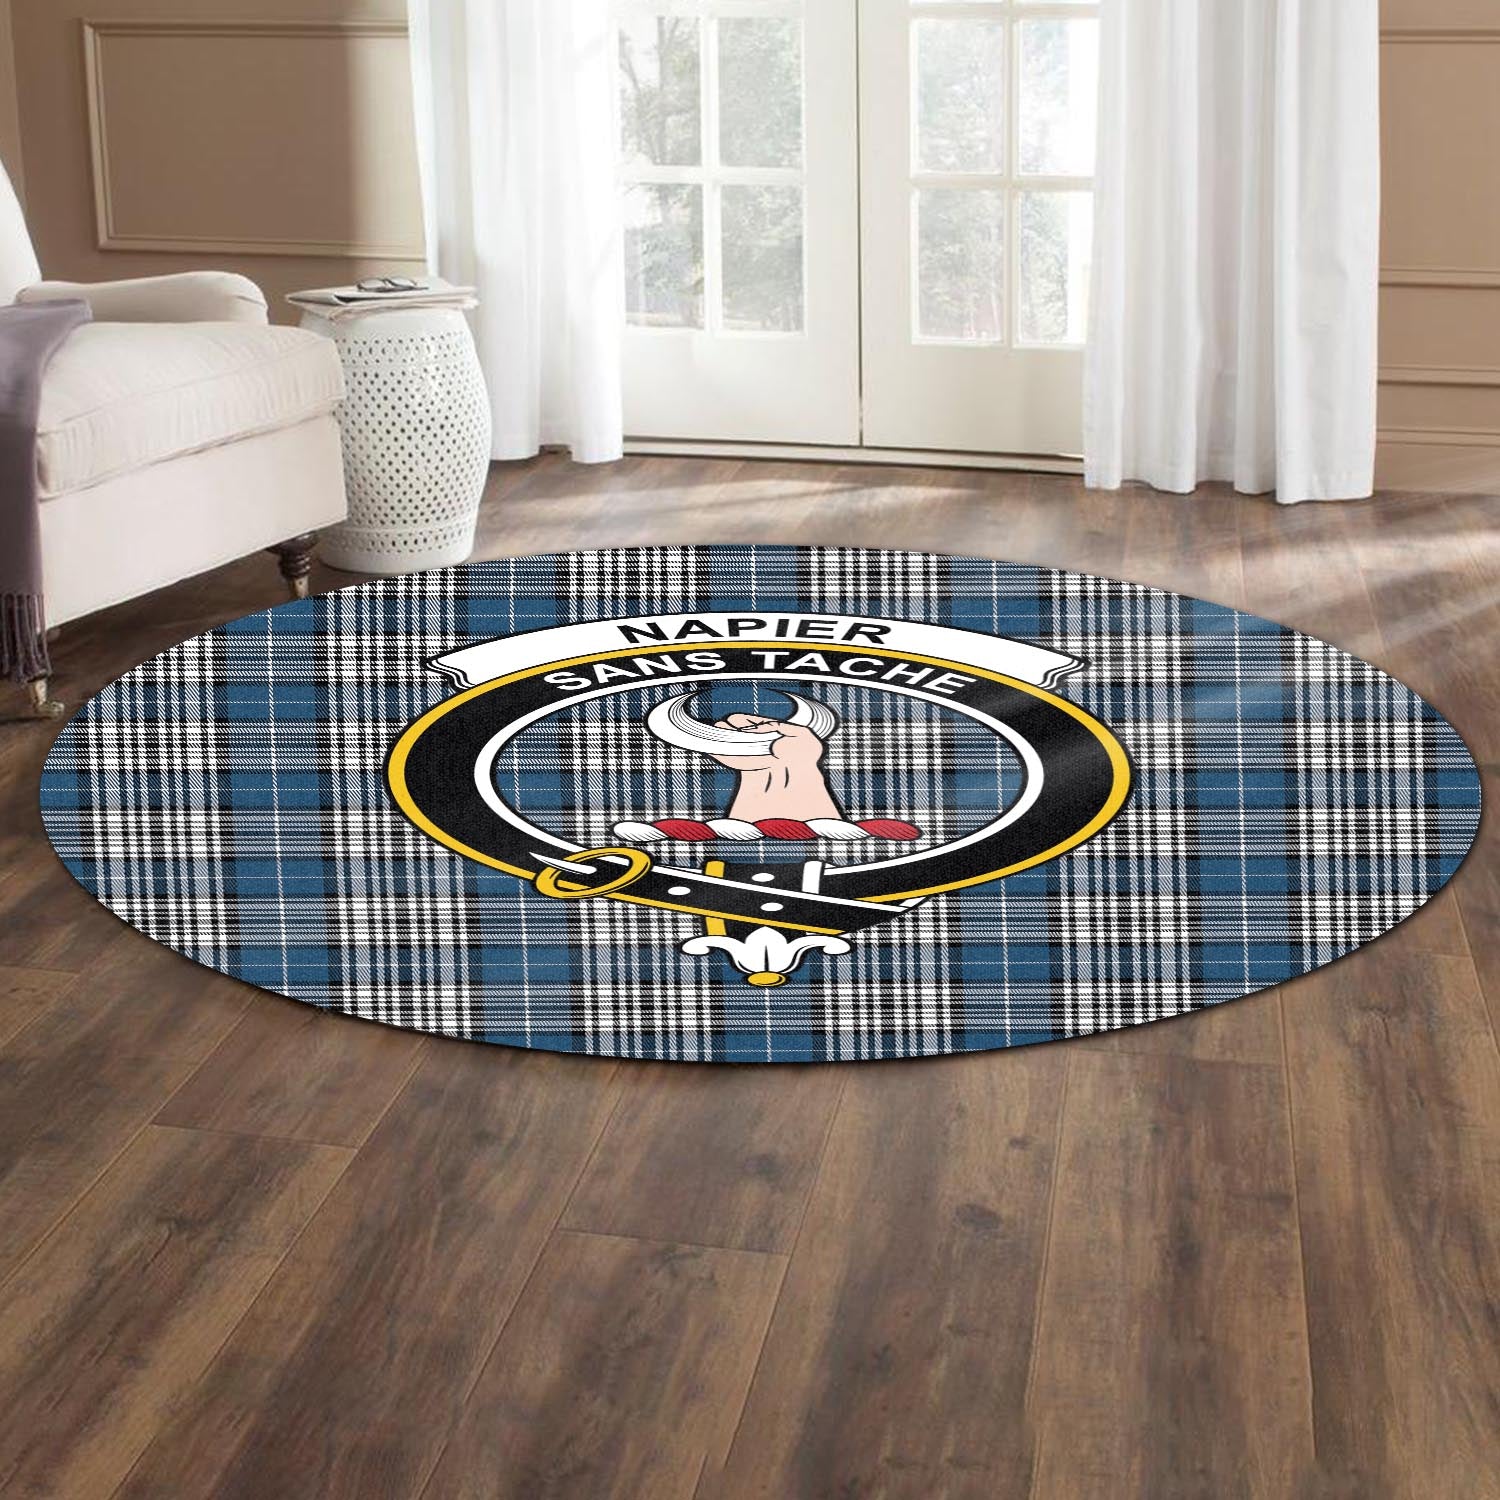 napier-modern-tartan-round-rug-with-family-crest